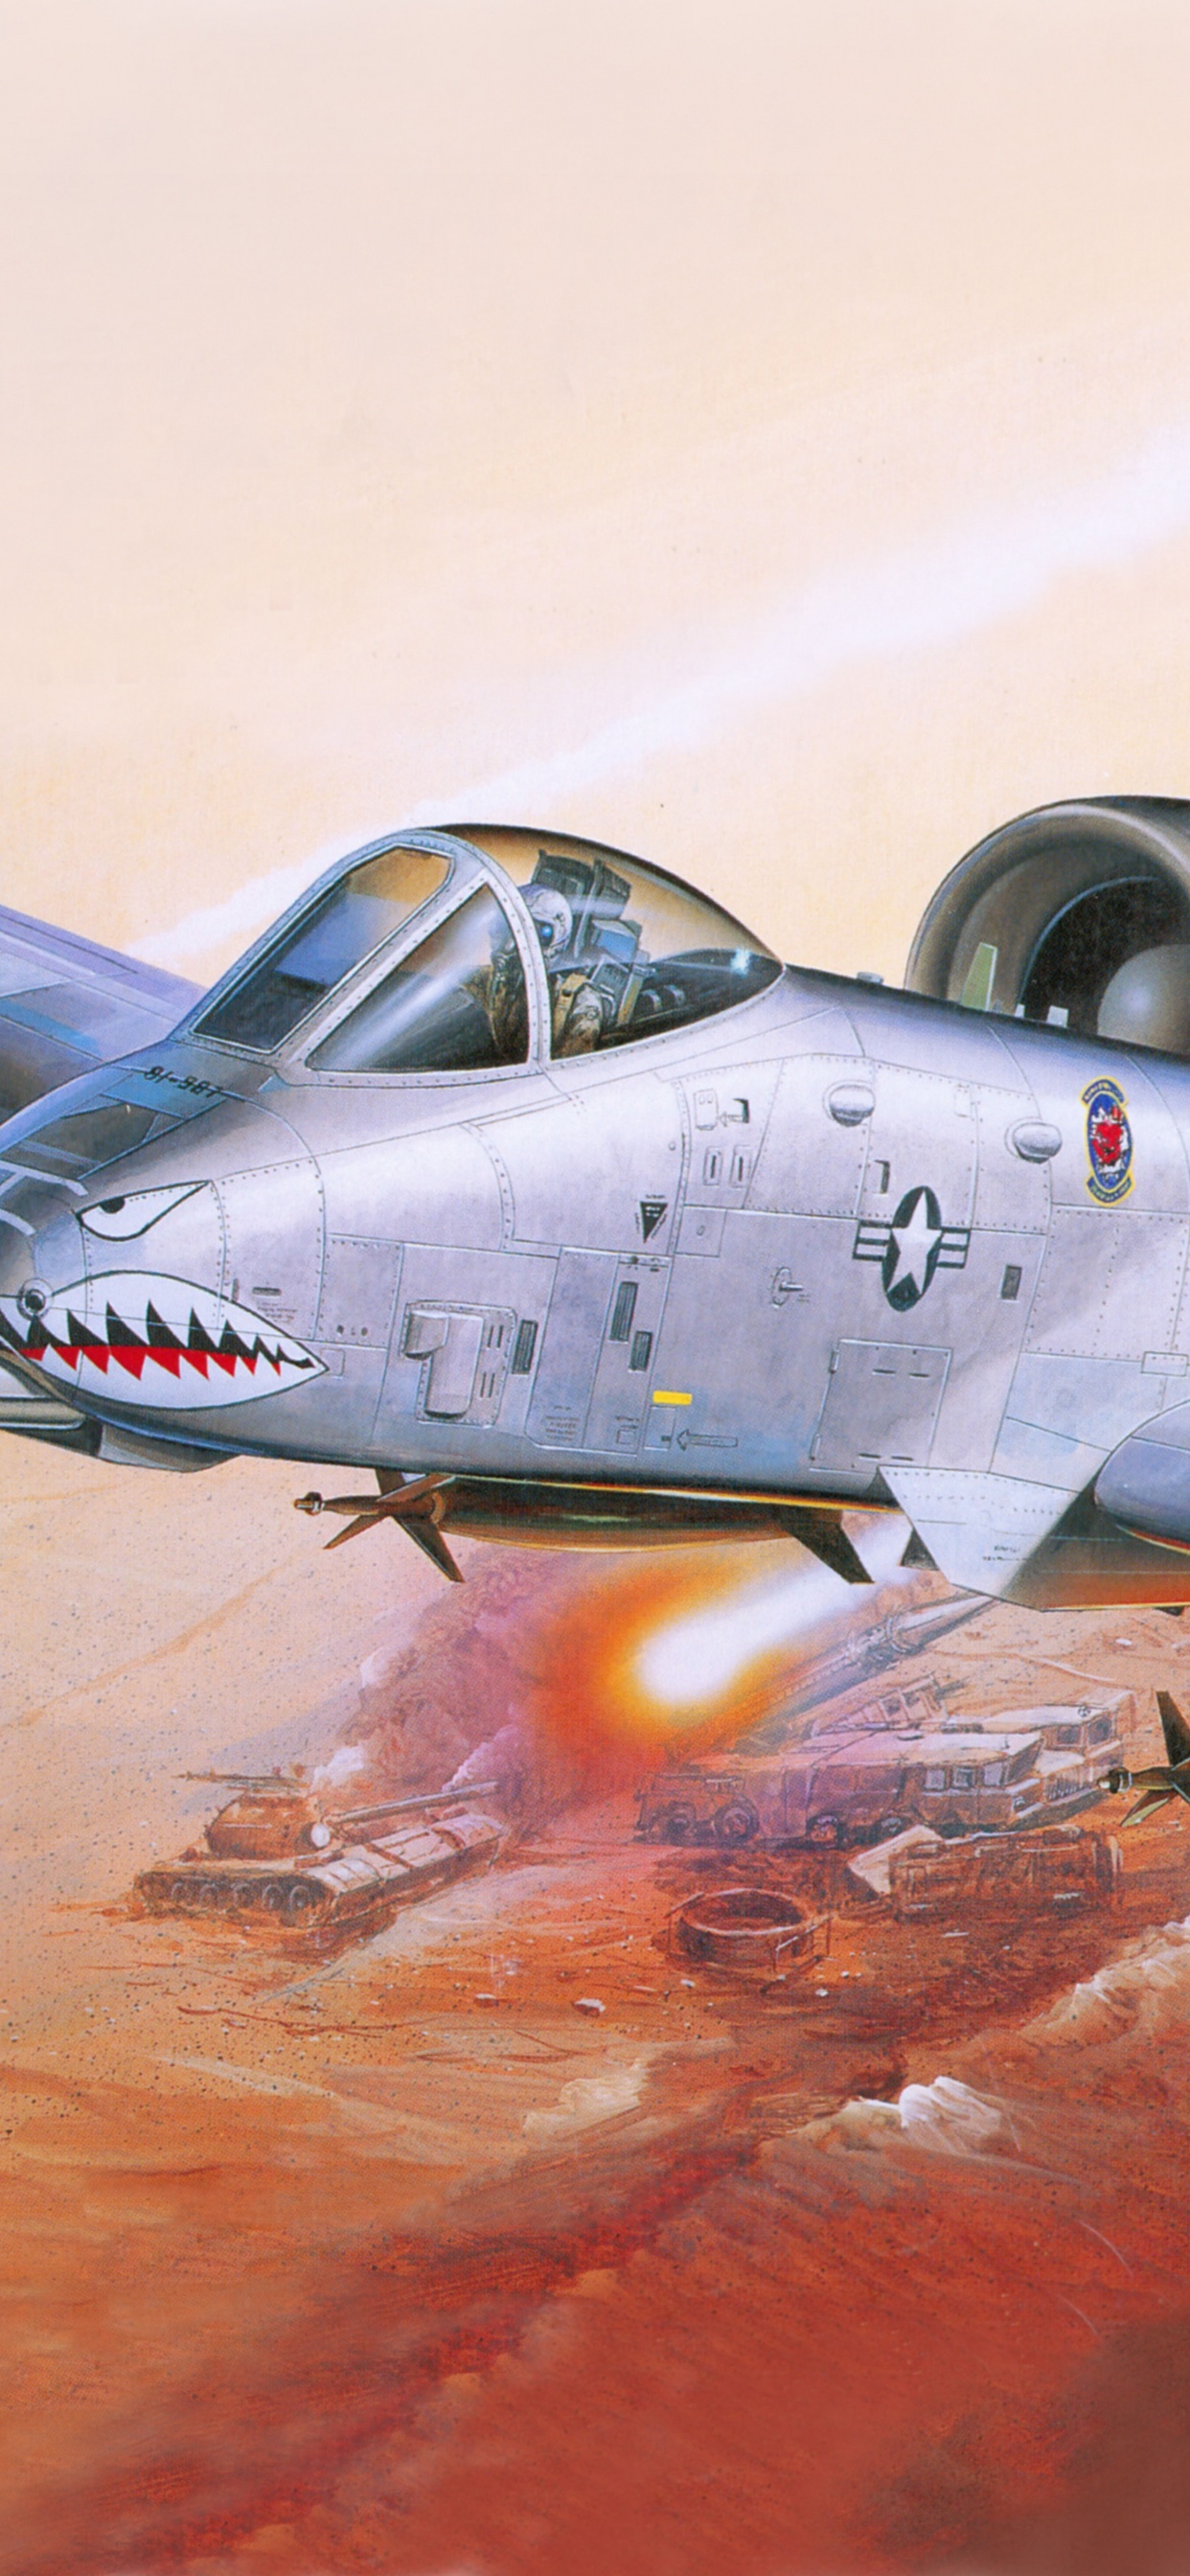 塑料模型, 航空, 喷气式飞机, 军用飞机, 空军 壁纸 1242x2688 允许